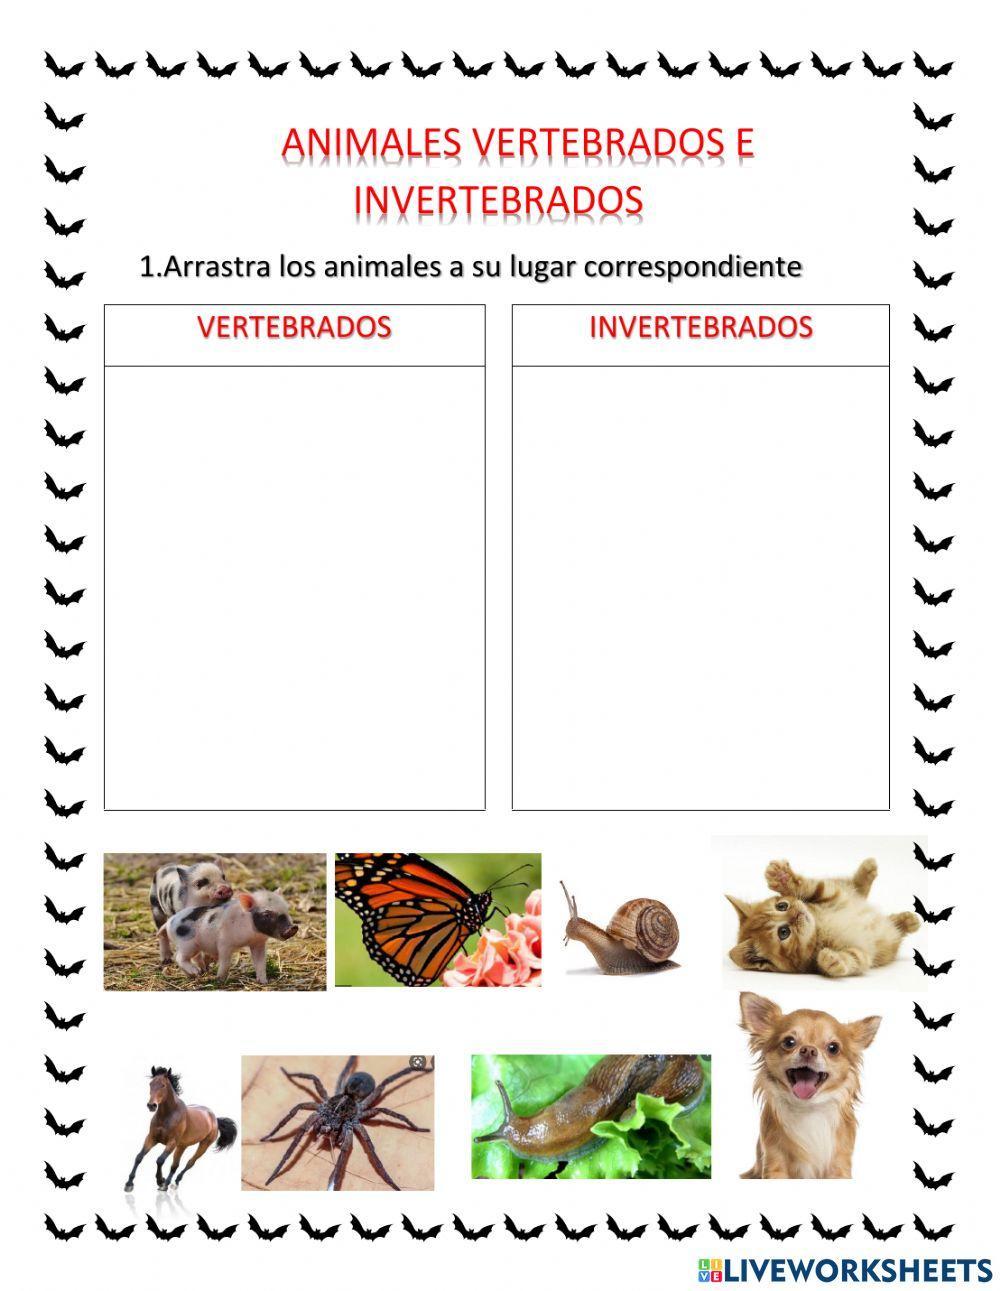 Animales vertebrados y invertebrados